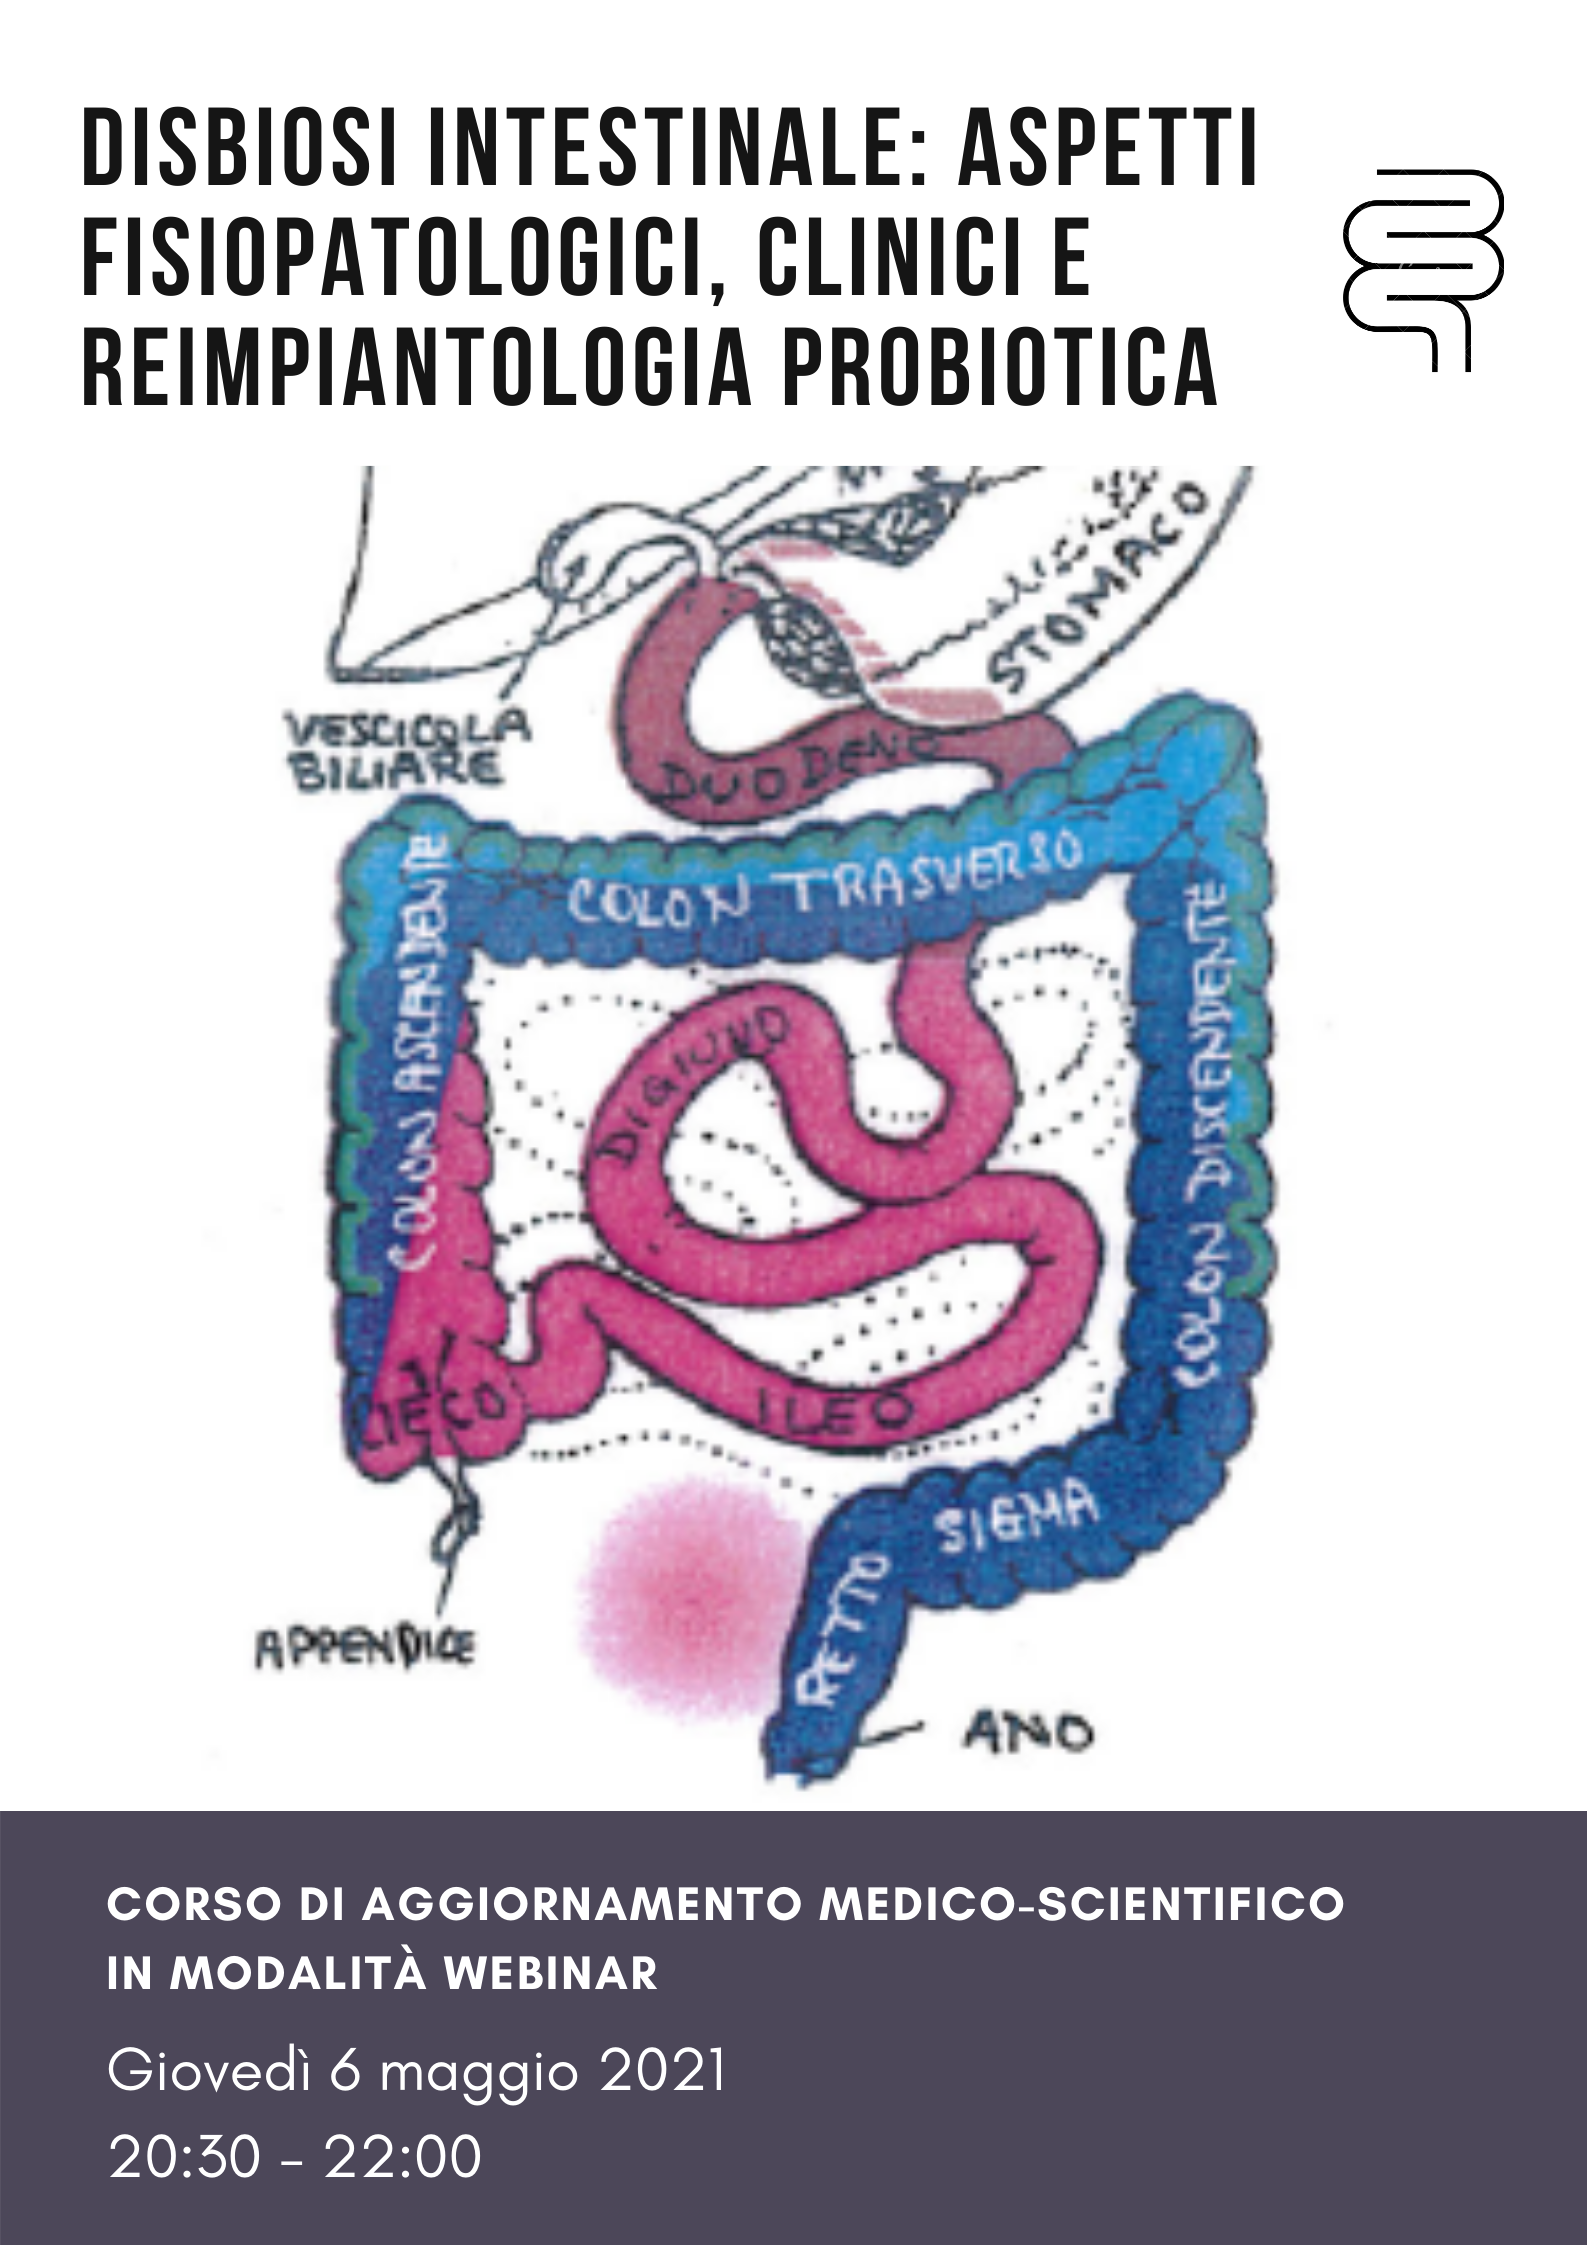 Disbiosi intestinale: aspetti fisiopatologici, clinici e reimpiantologia probiotica